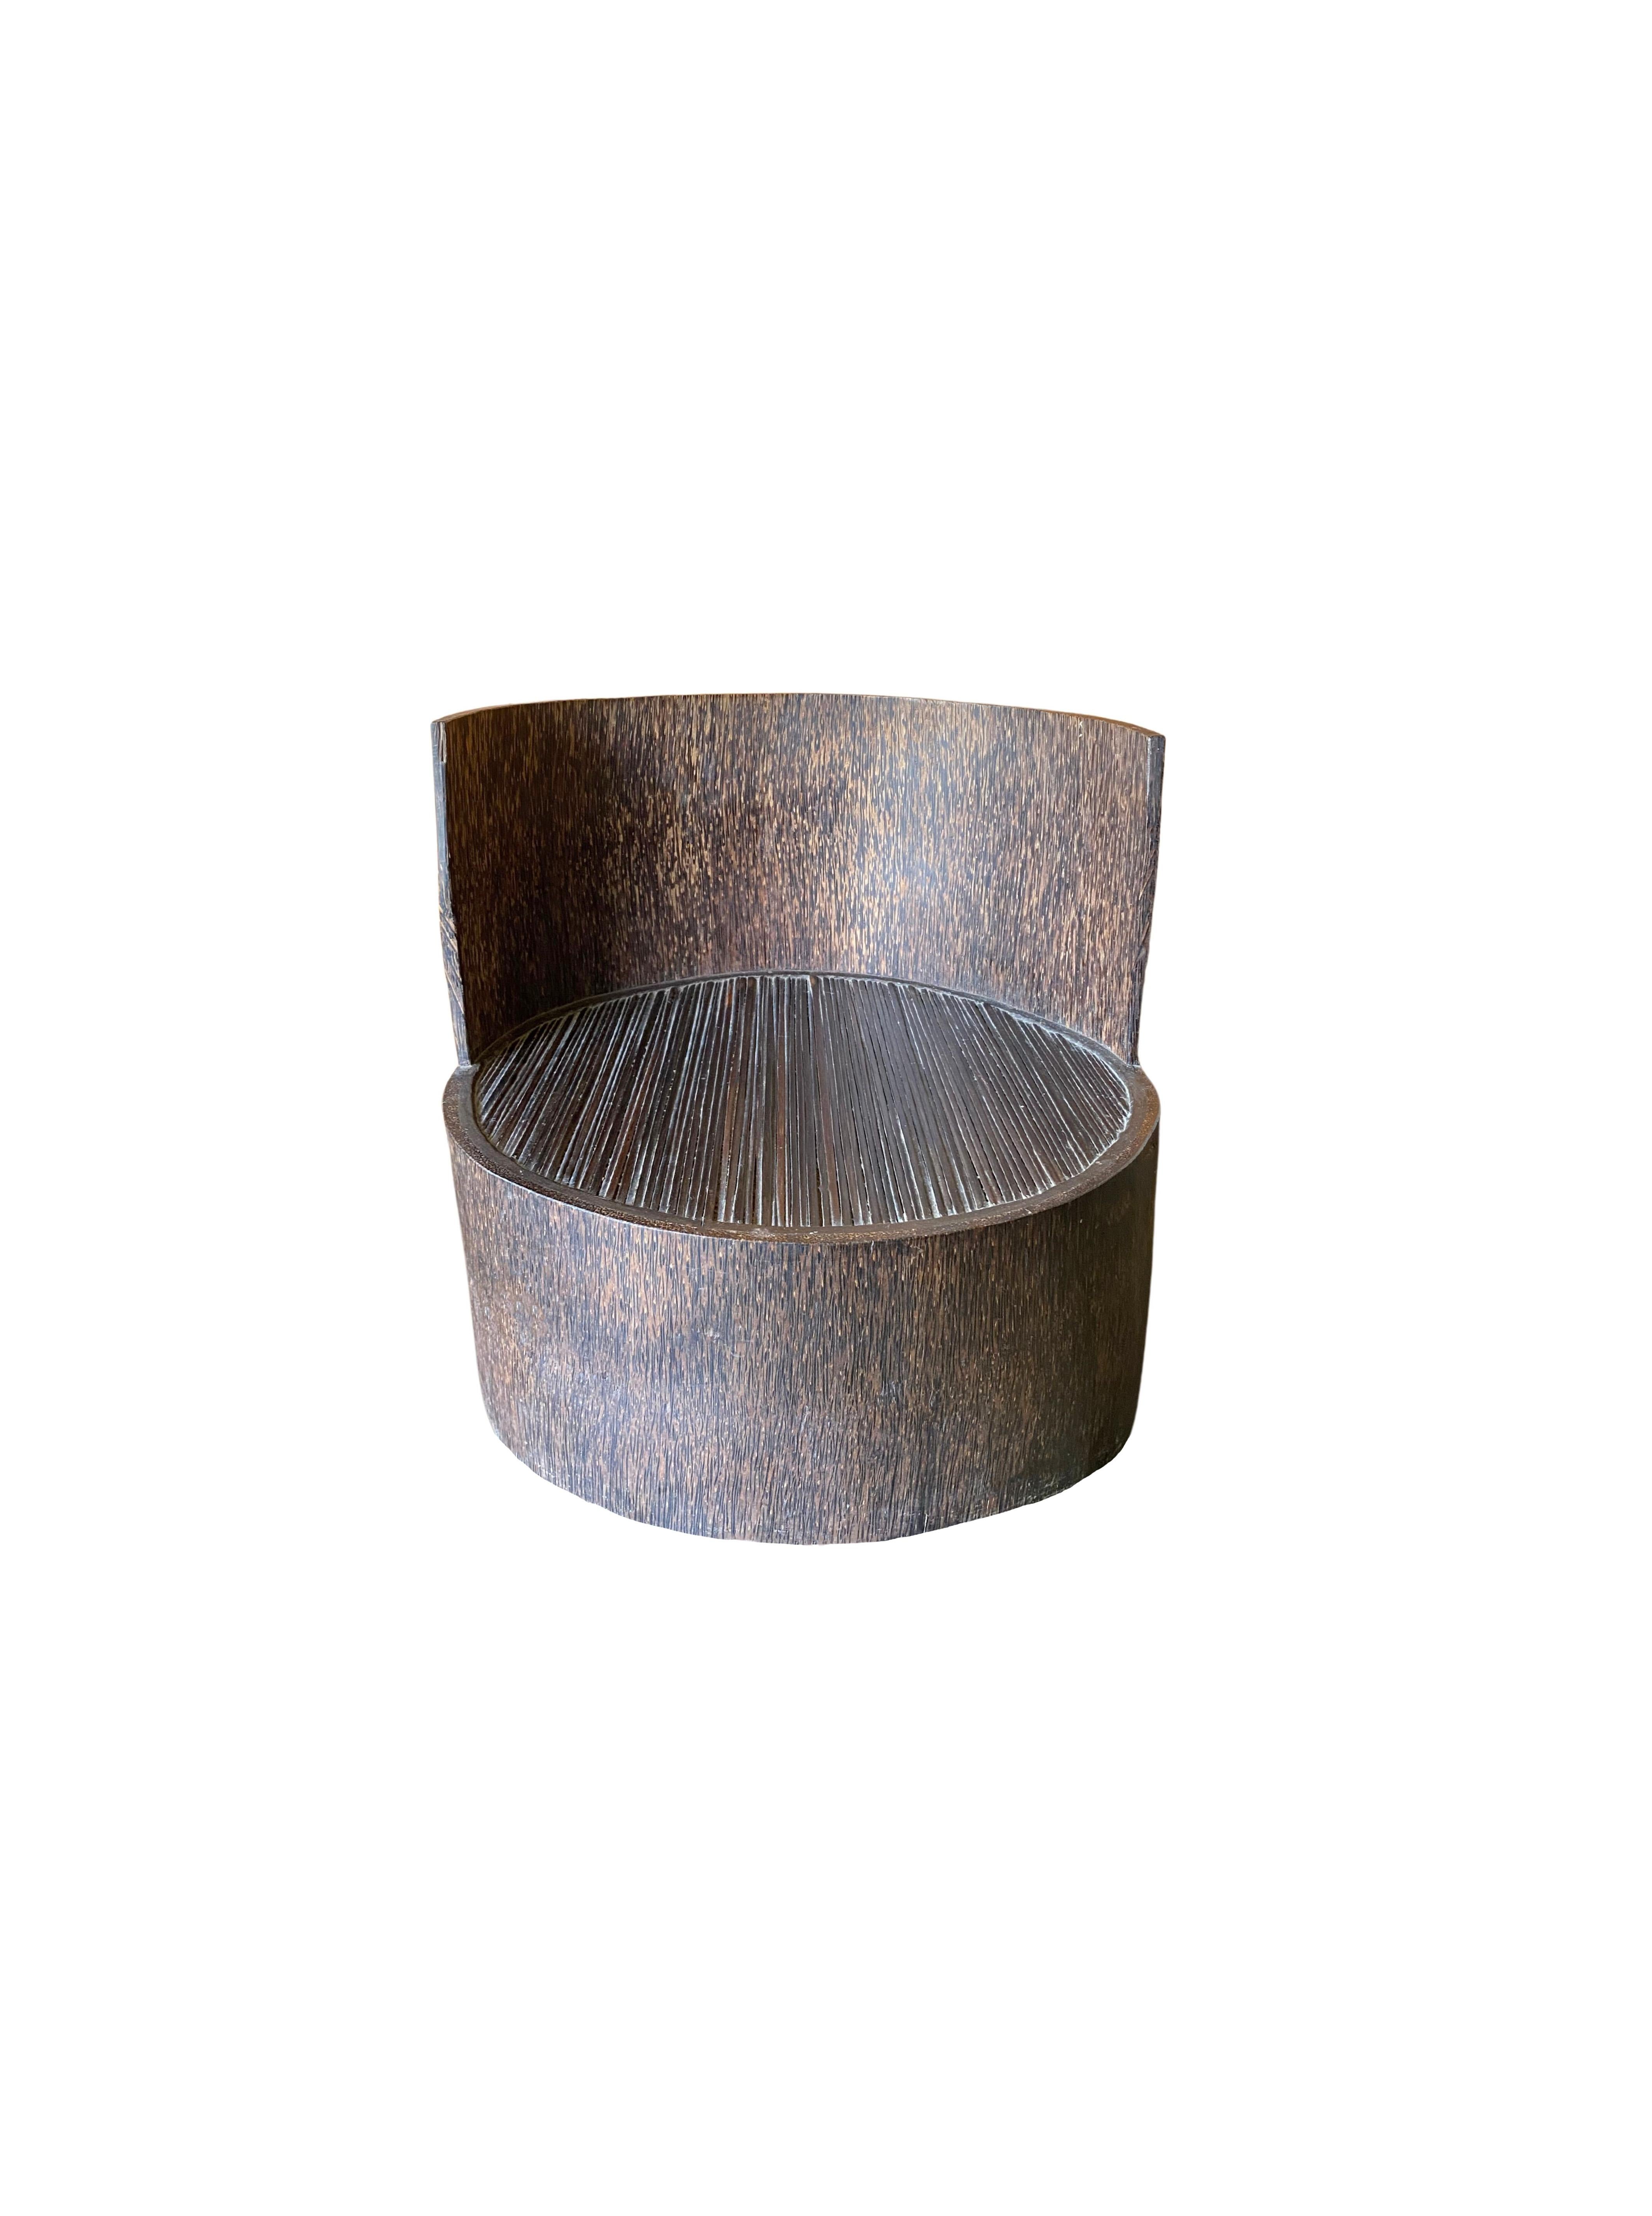 Cette chaise a été fabriquée à partir d'un seul tronc de palmier. Une merveilleuse texture de bois de palmier orne cette chaise. Un objet merveilleux, à la fois organique et moderne. Un objet merveilleusement unique qui apportera de la chaleur à